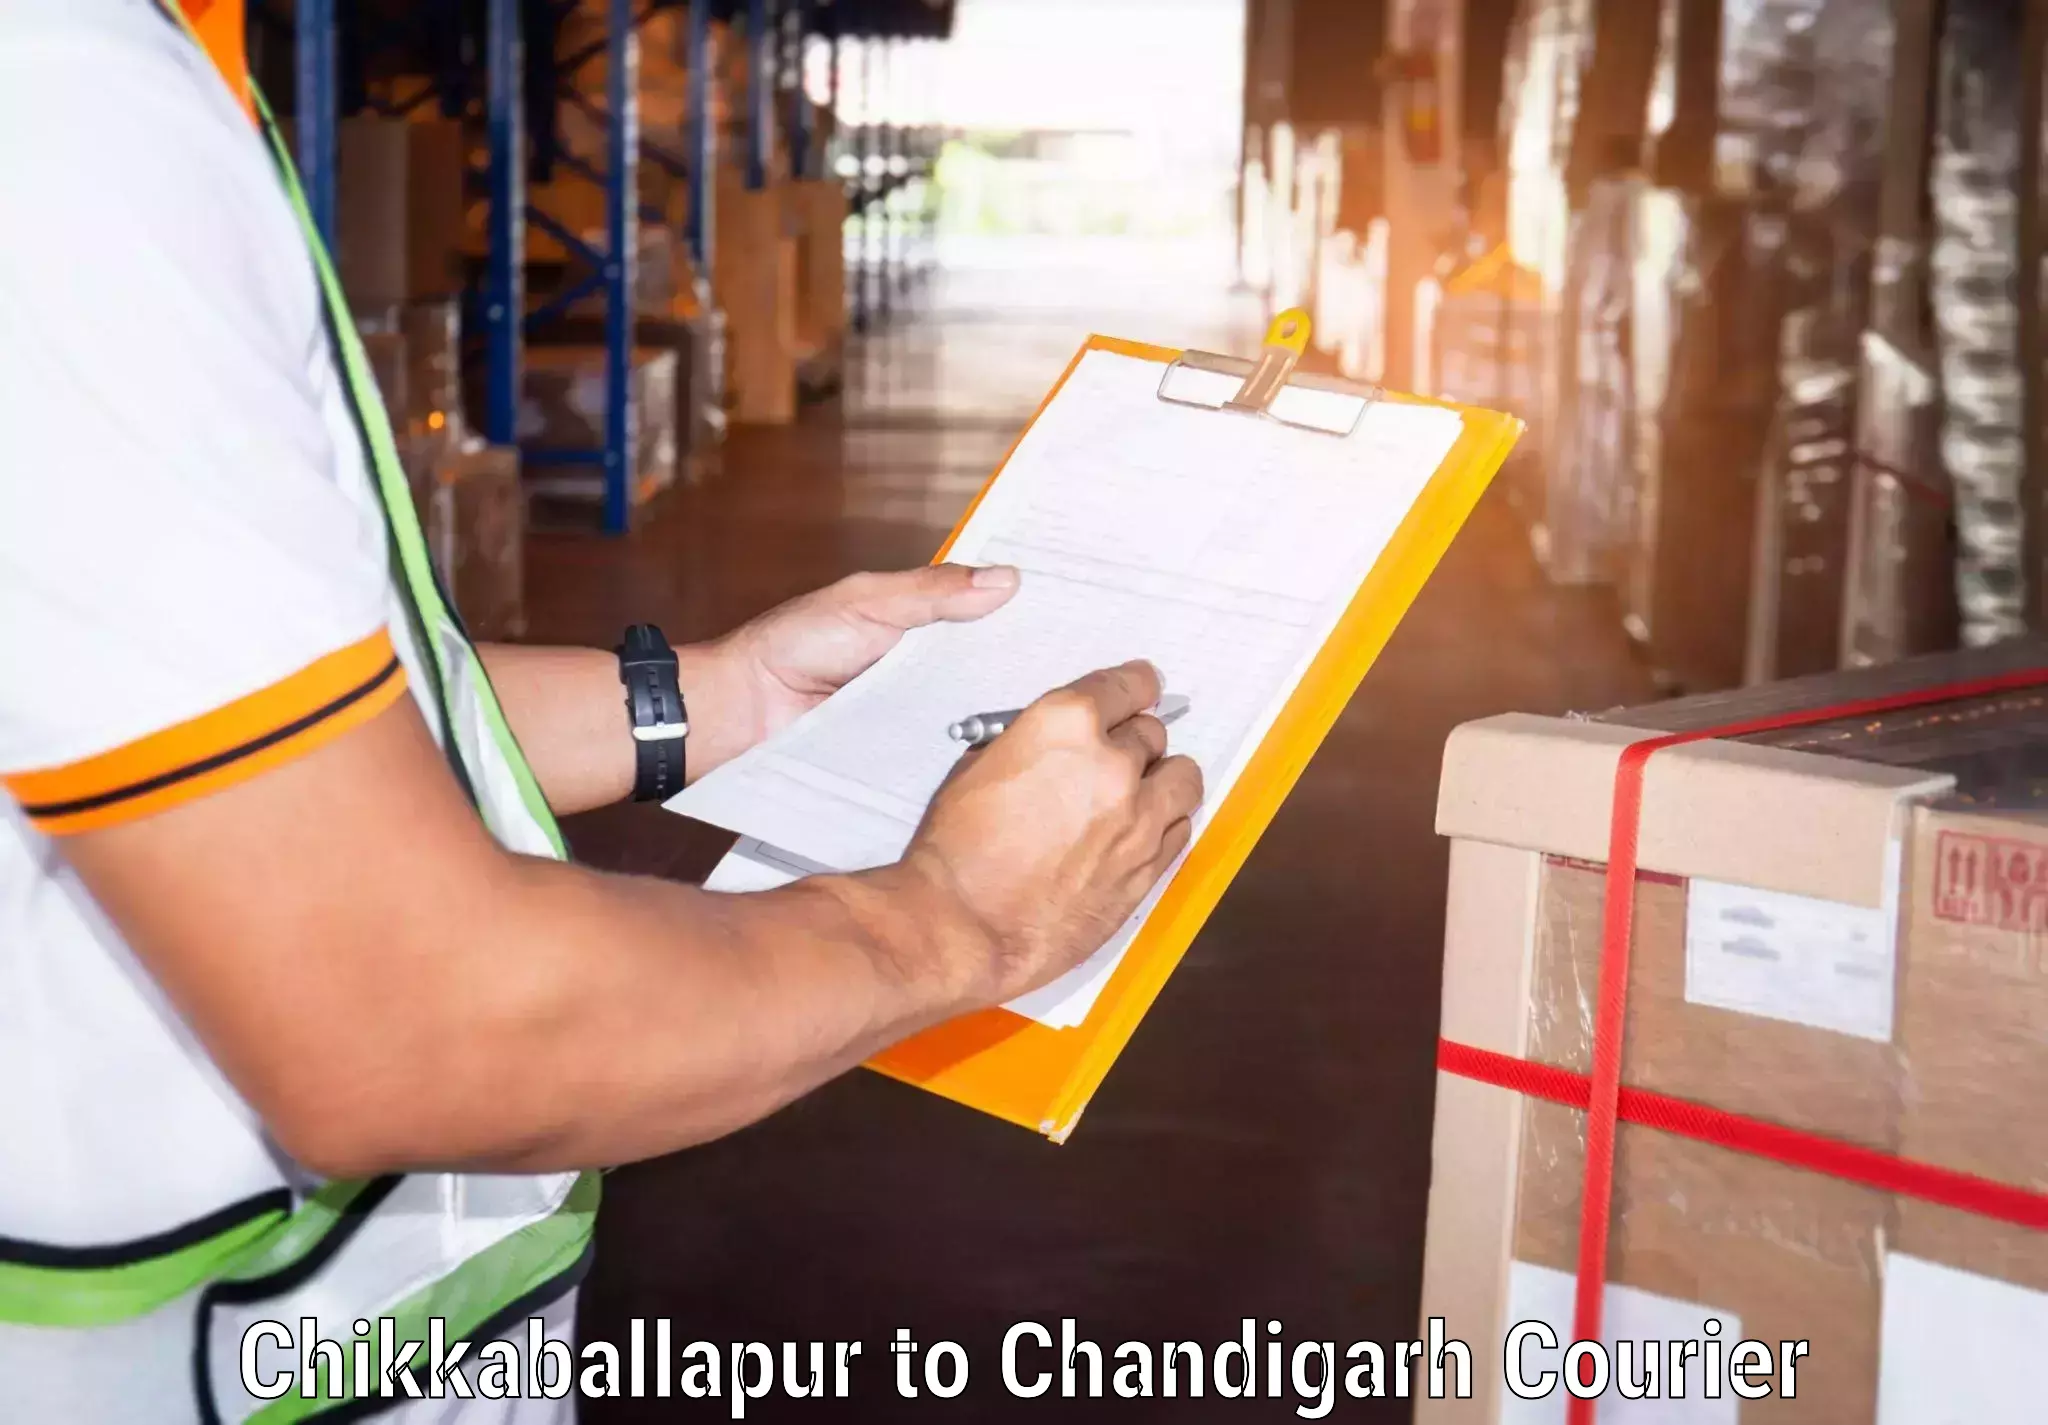 24/7 courier service Chikkaballapur to Chandigarh